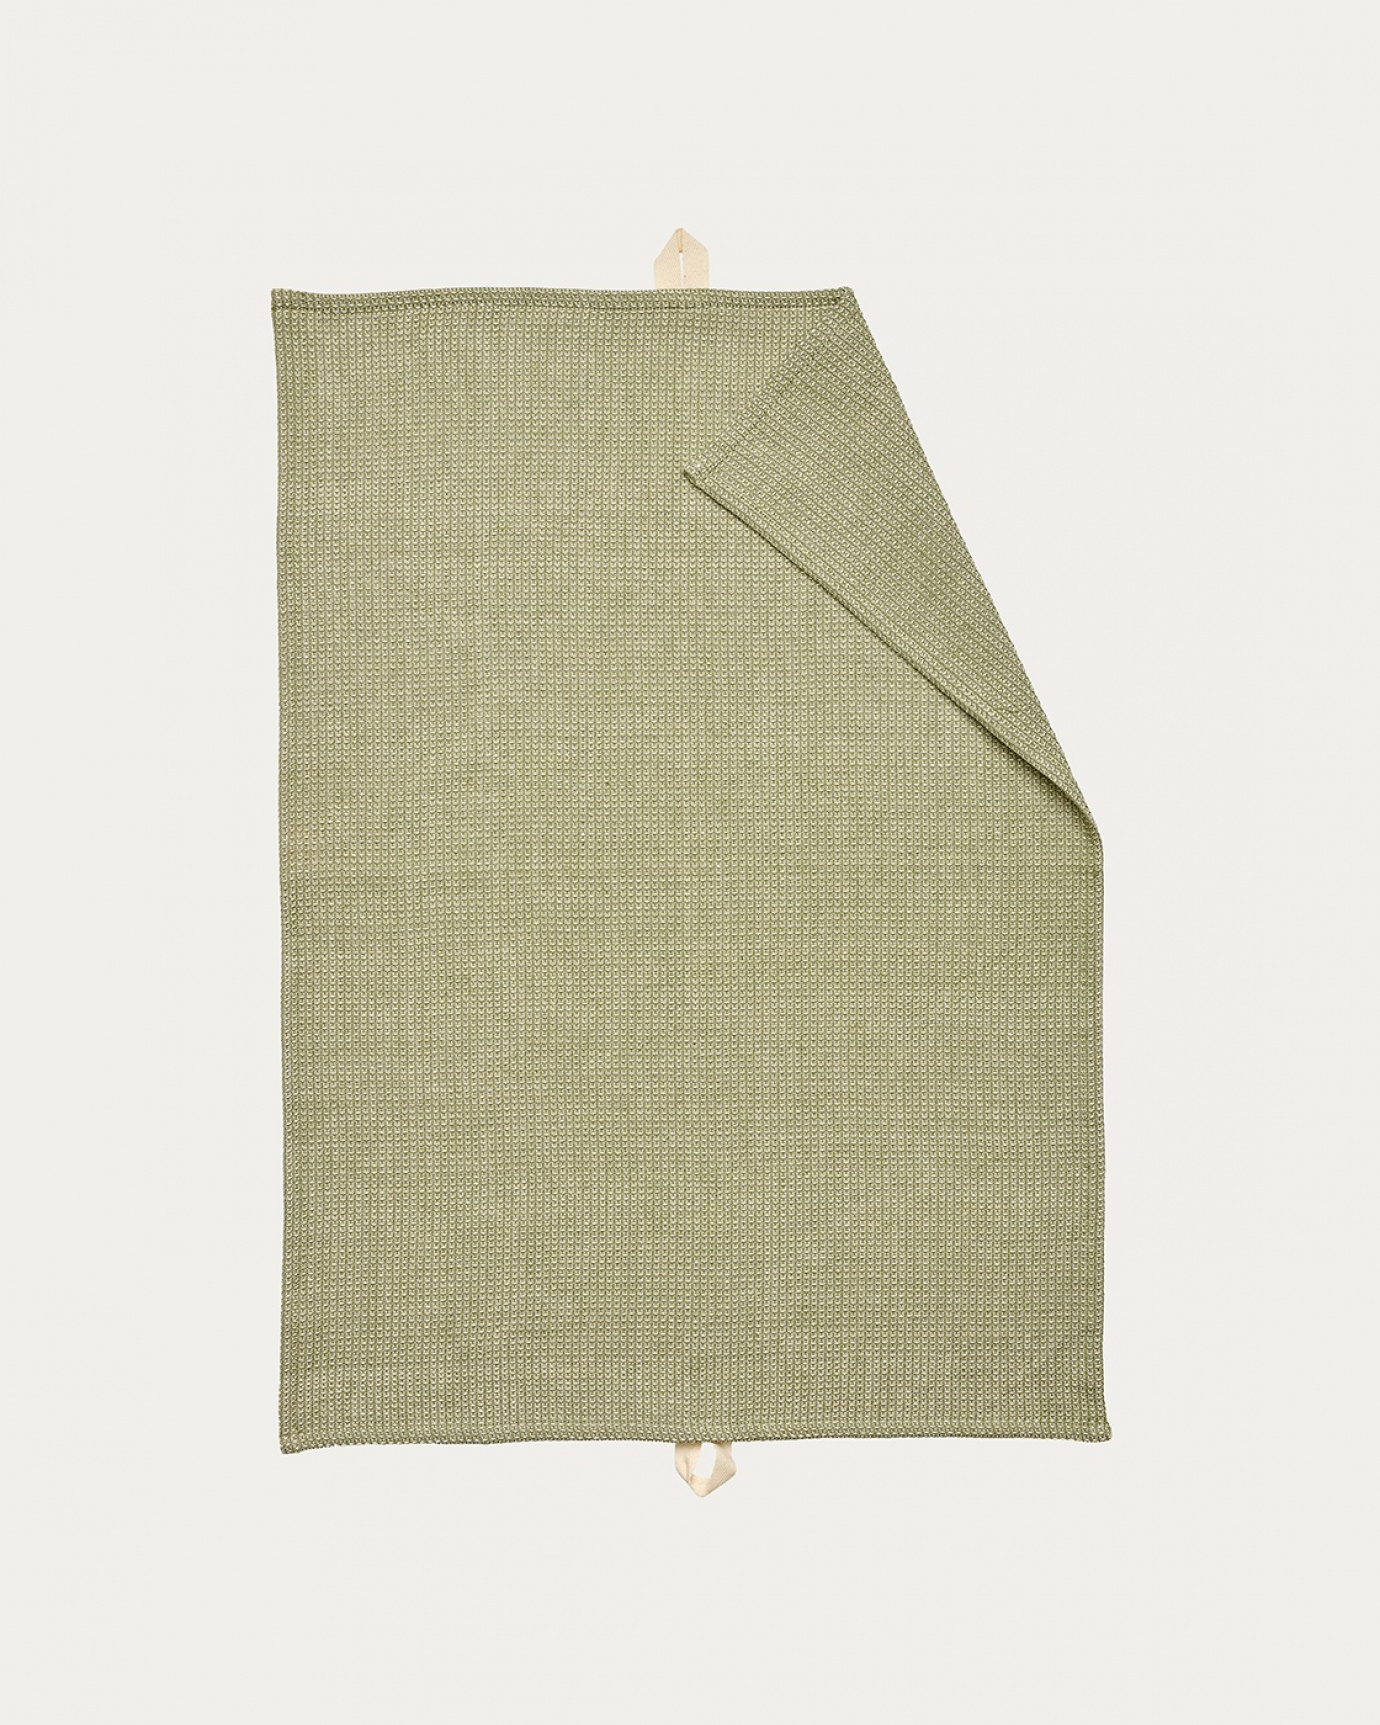 Image du produit torchon AGNES vert cyprès clair en coton doux à structure gaufrée de LINUM DESIGN. Taille 50 x 70 cm.